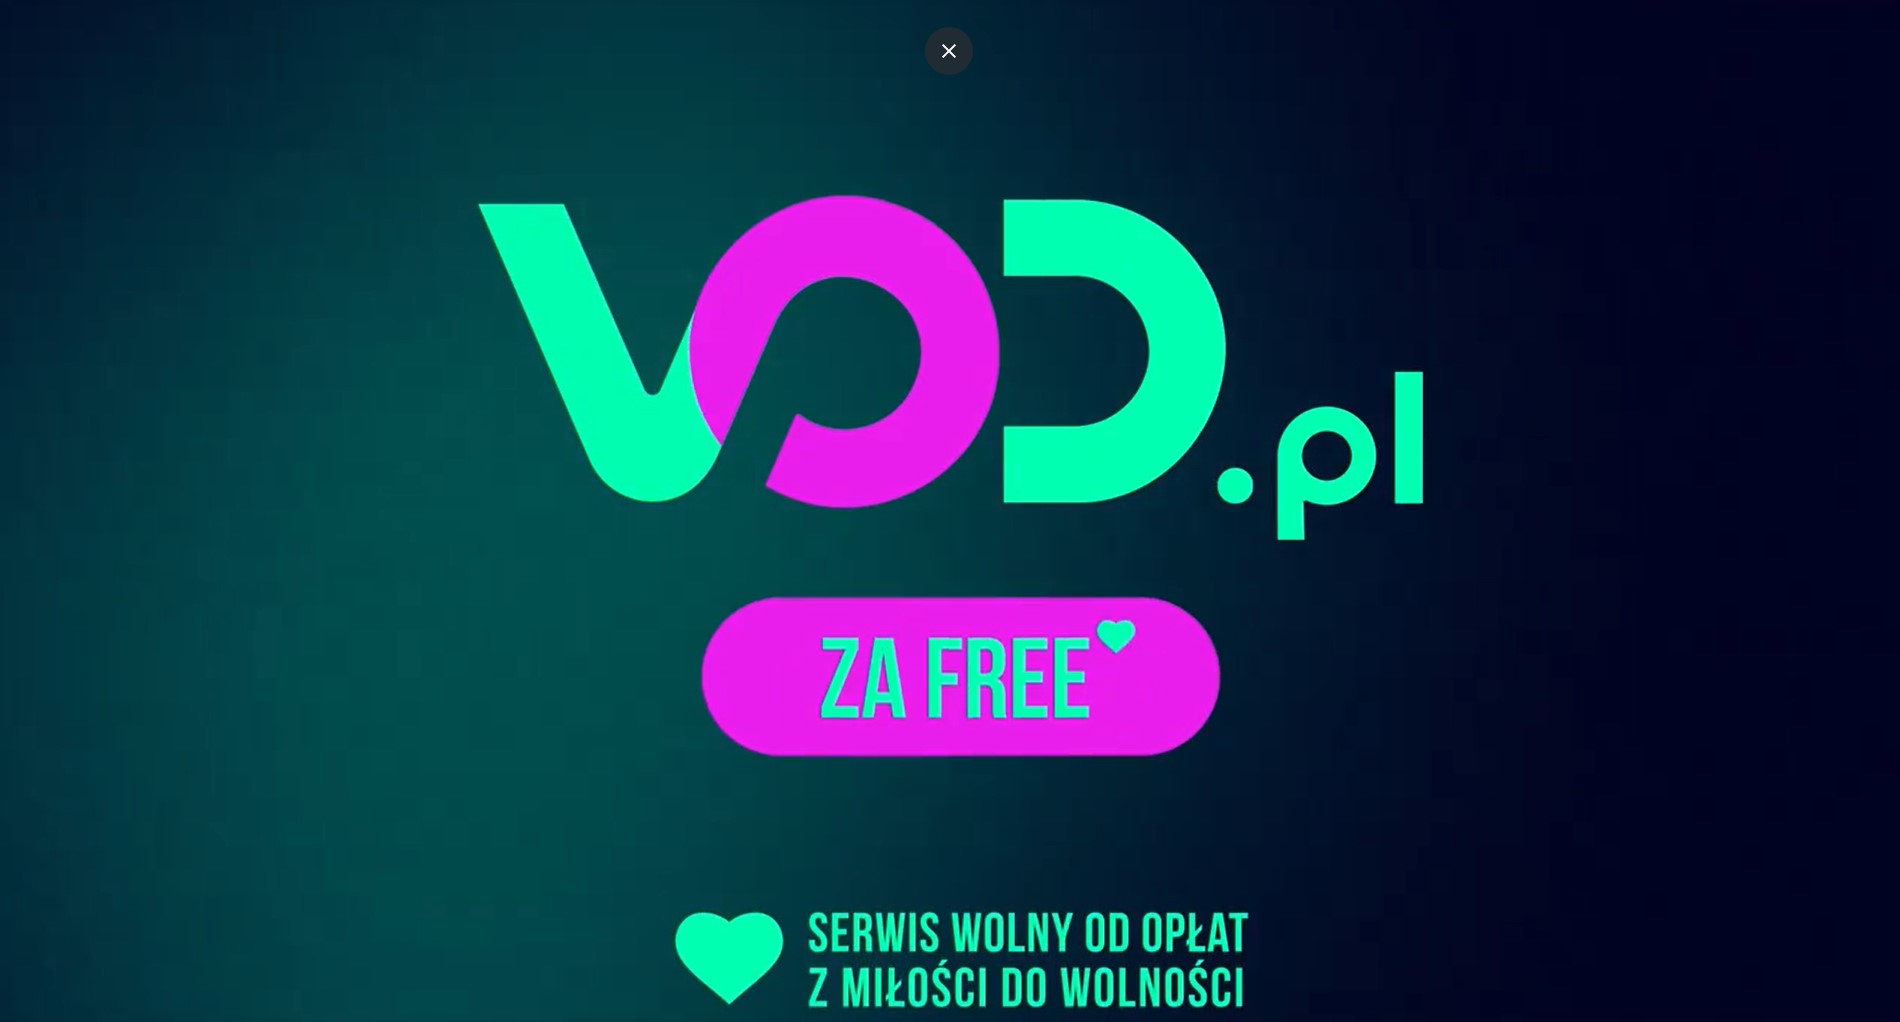 VOD.pl trafia na Smart TV i jest teraz darmową platformą